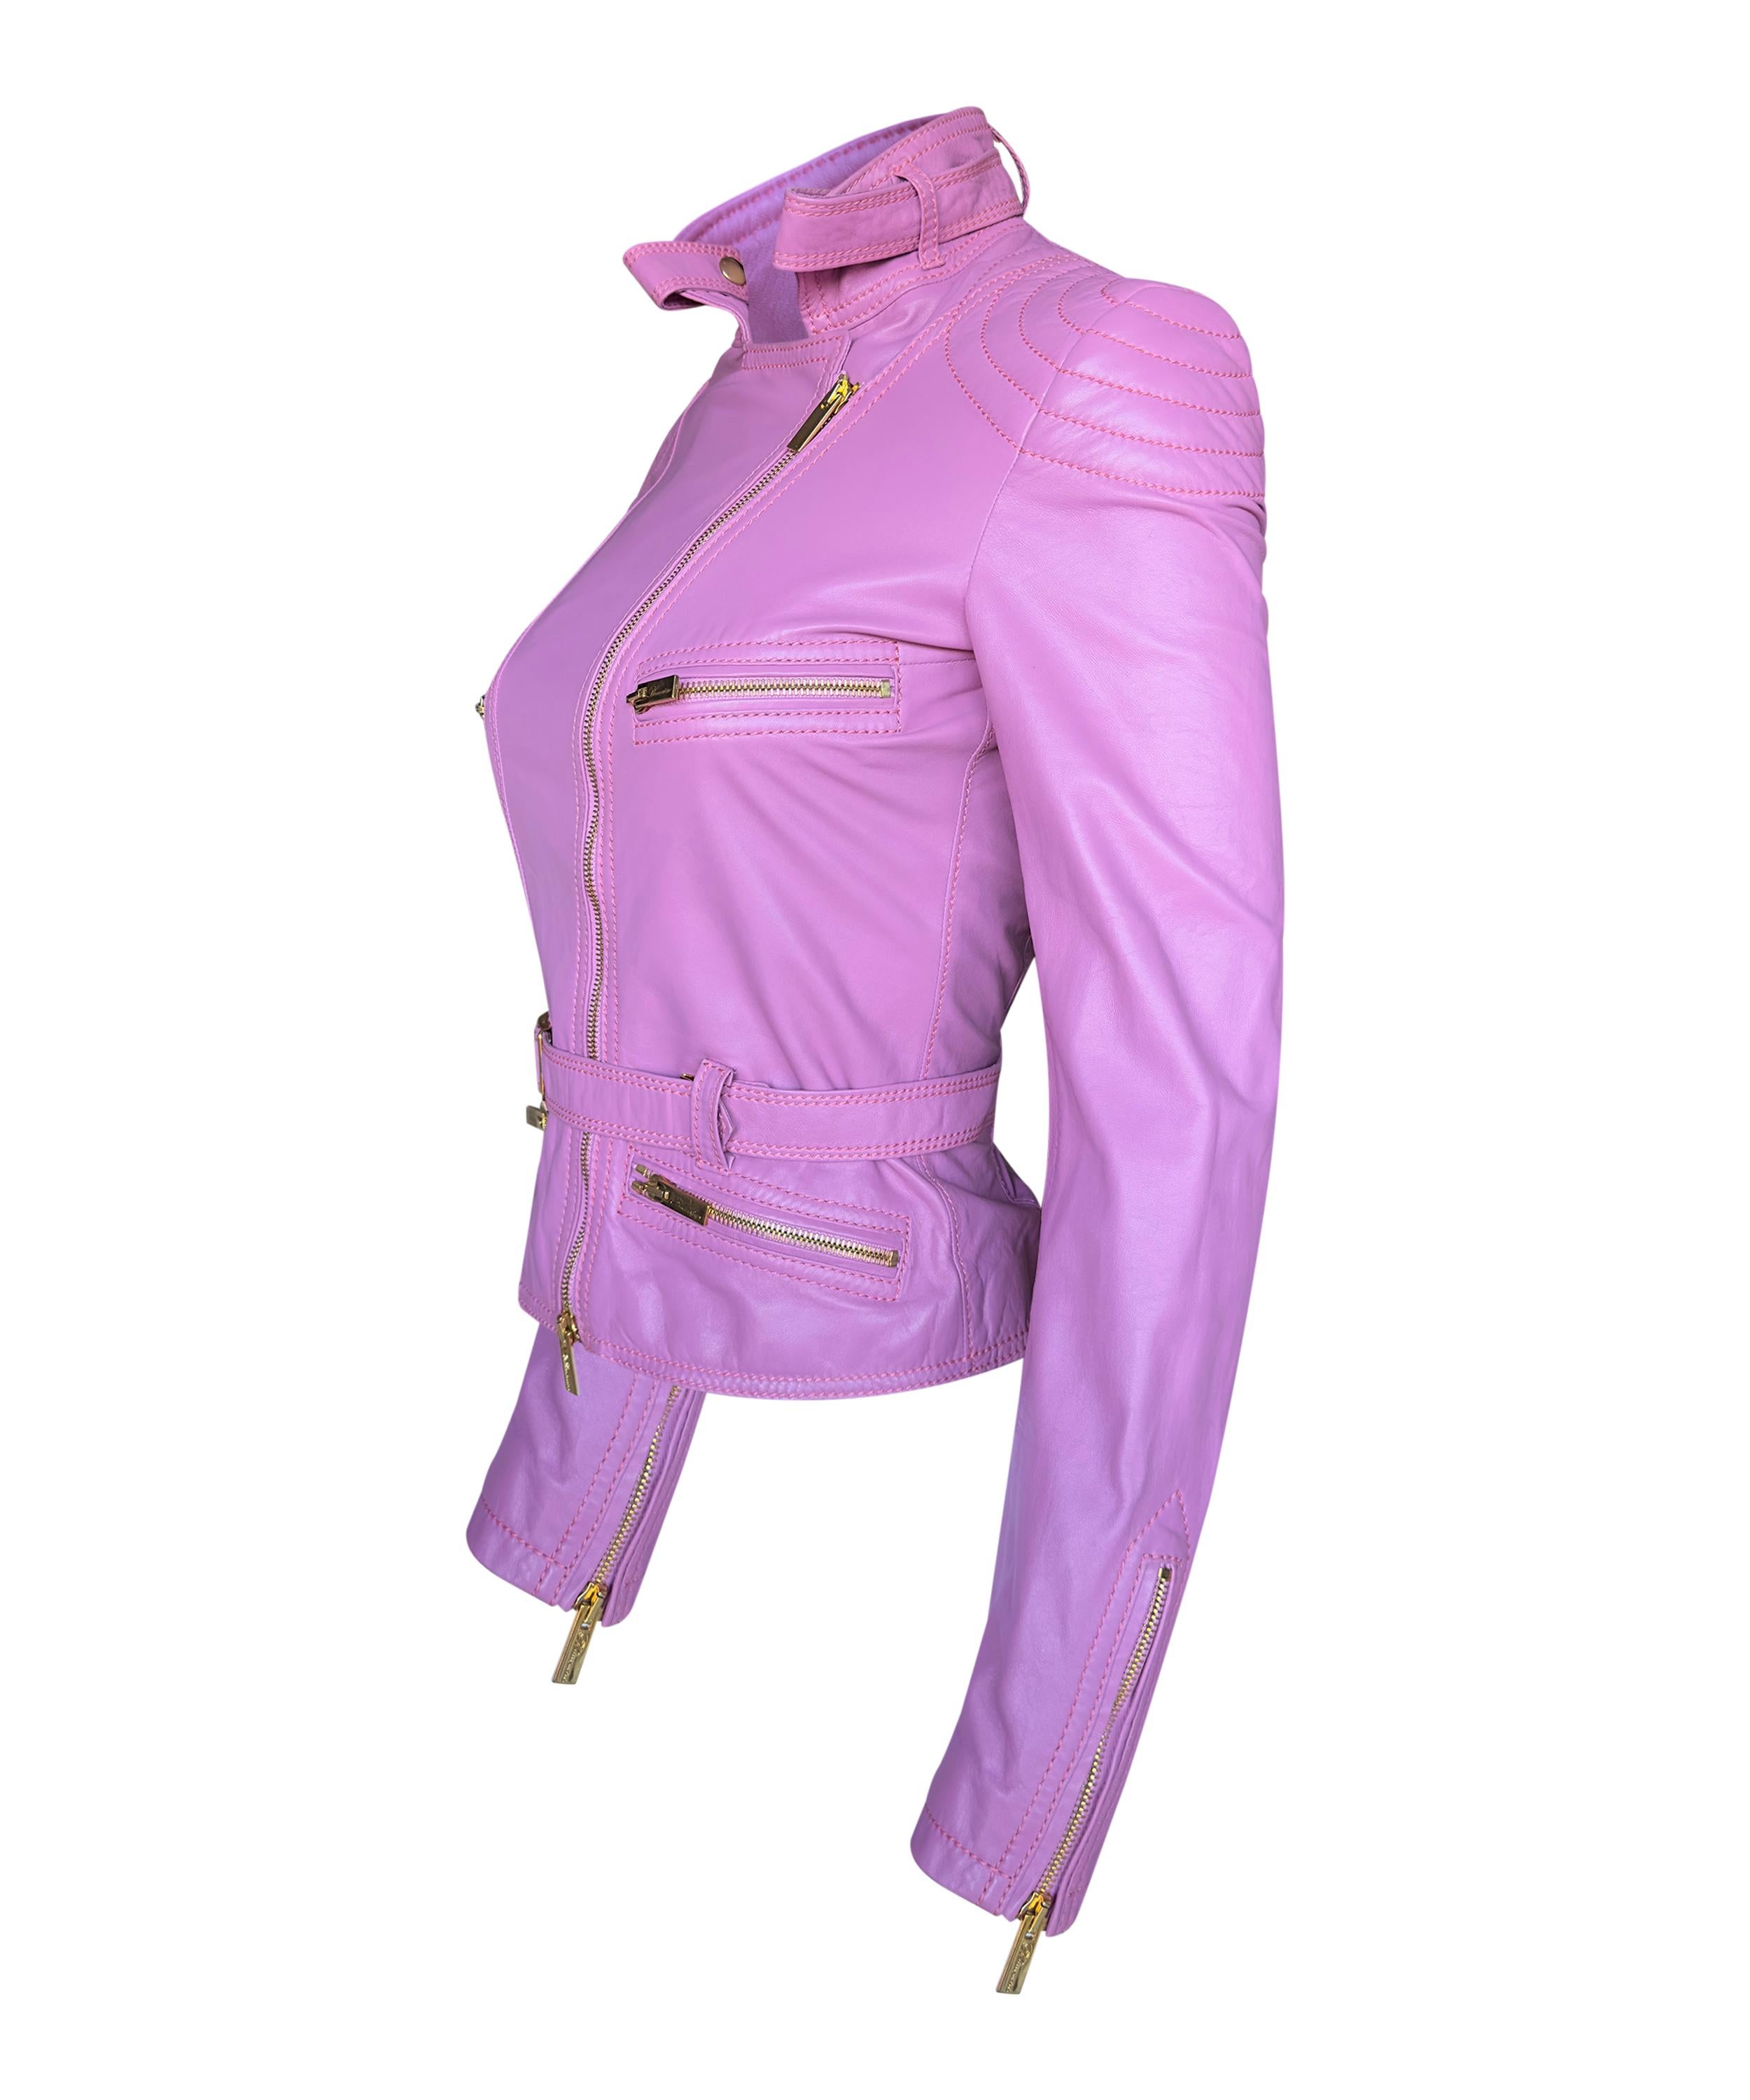 ✨Blumarine Rosa Biker-Lederjacke  mit Gold Hardwear und Gürtel
✨100% Leder und Seide gefüttert 
✨Sehr guter Zustand, geringe Gebrauchsspuren an der Hardware durch Lagerung 
✨Größe XS-6UK-38IT